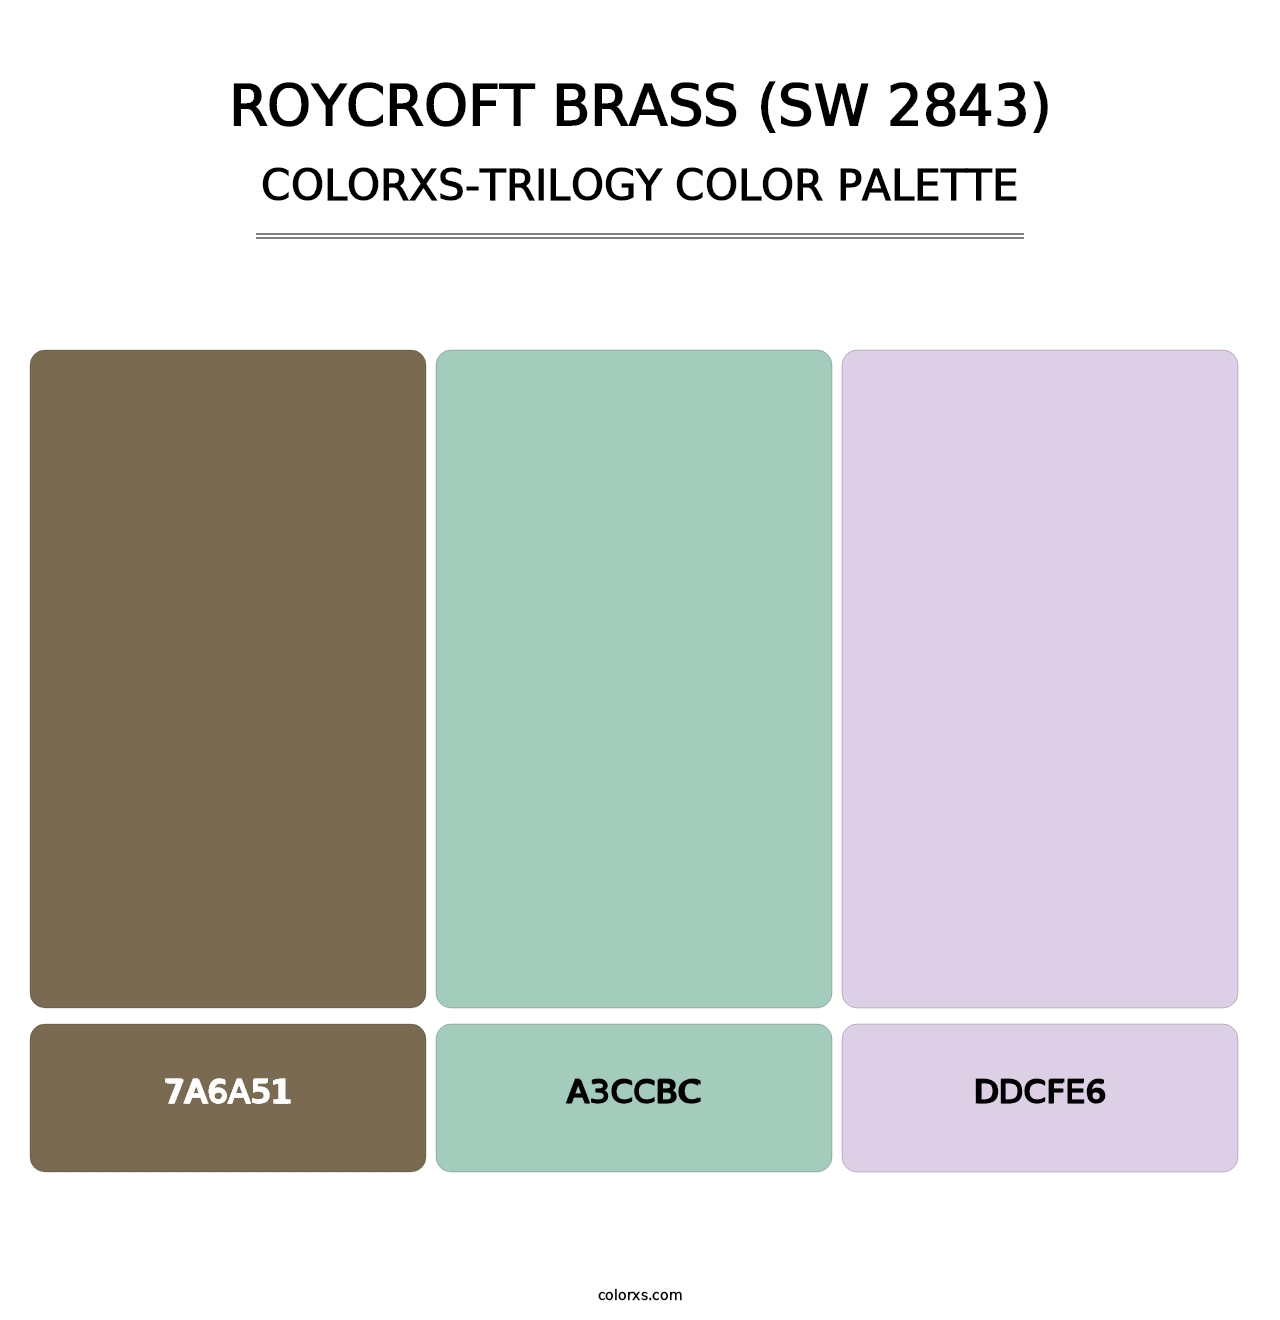 Roycroft Brass (SW 2843) - Colorxs Trilogy Palette